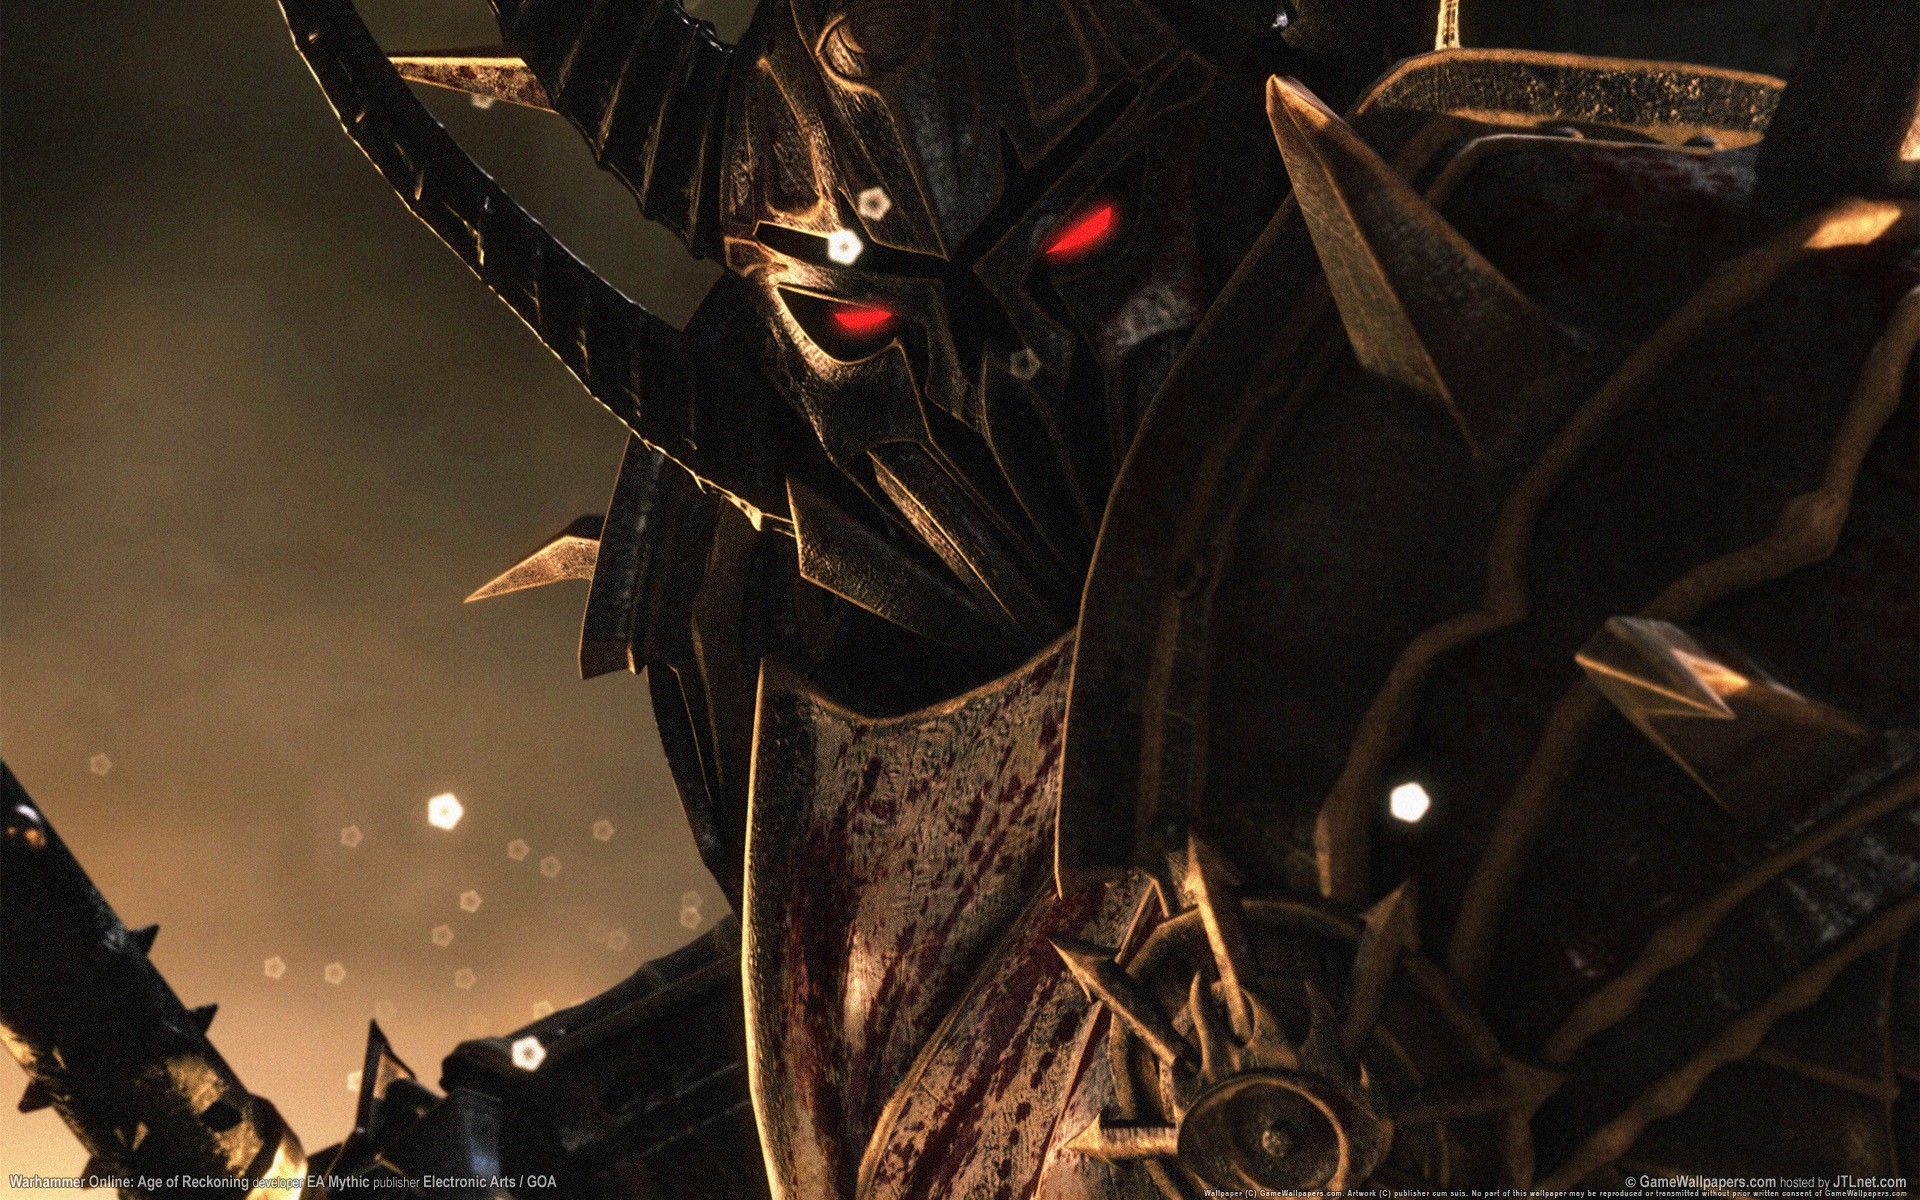 fantasy art, Video games, Warhammer online: age of reckoning, Warhammer Online, Warhammer Wallpaper